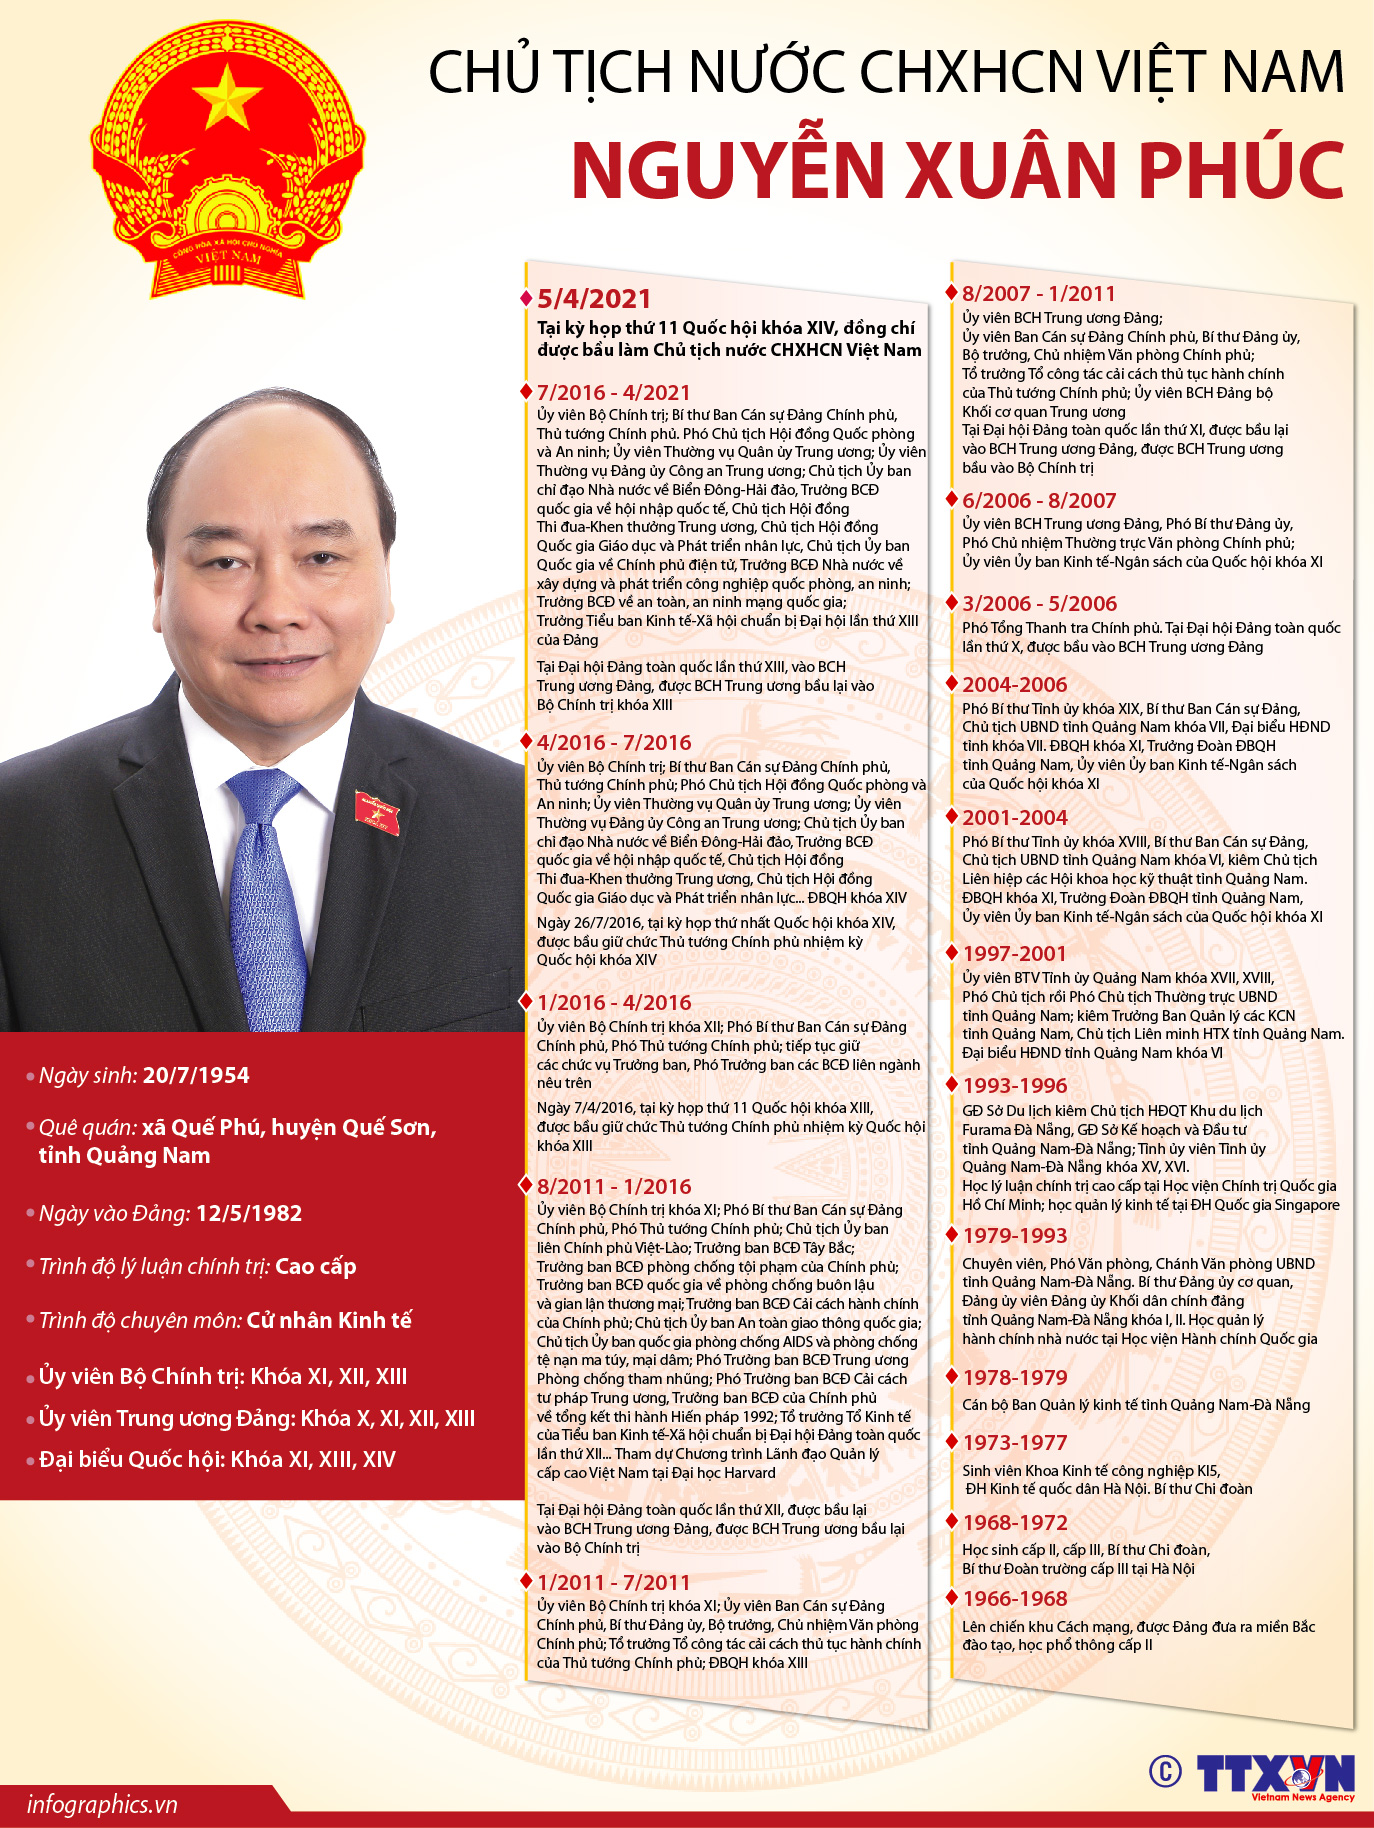 Hình ảnh Infographics về Chủ tịch nước Nguyễn Xuân Phúc sẽ giúp bạn hiểu rõ hơn về những thành tựu và quyết sách của ông trong năm qua.